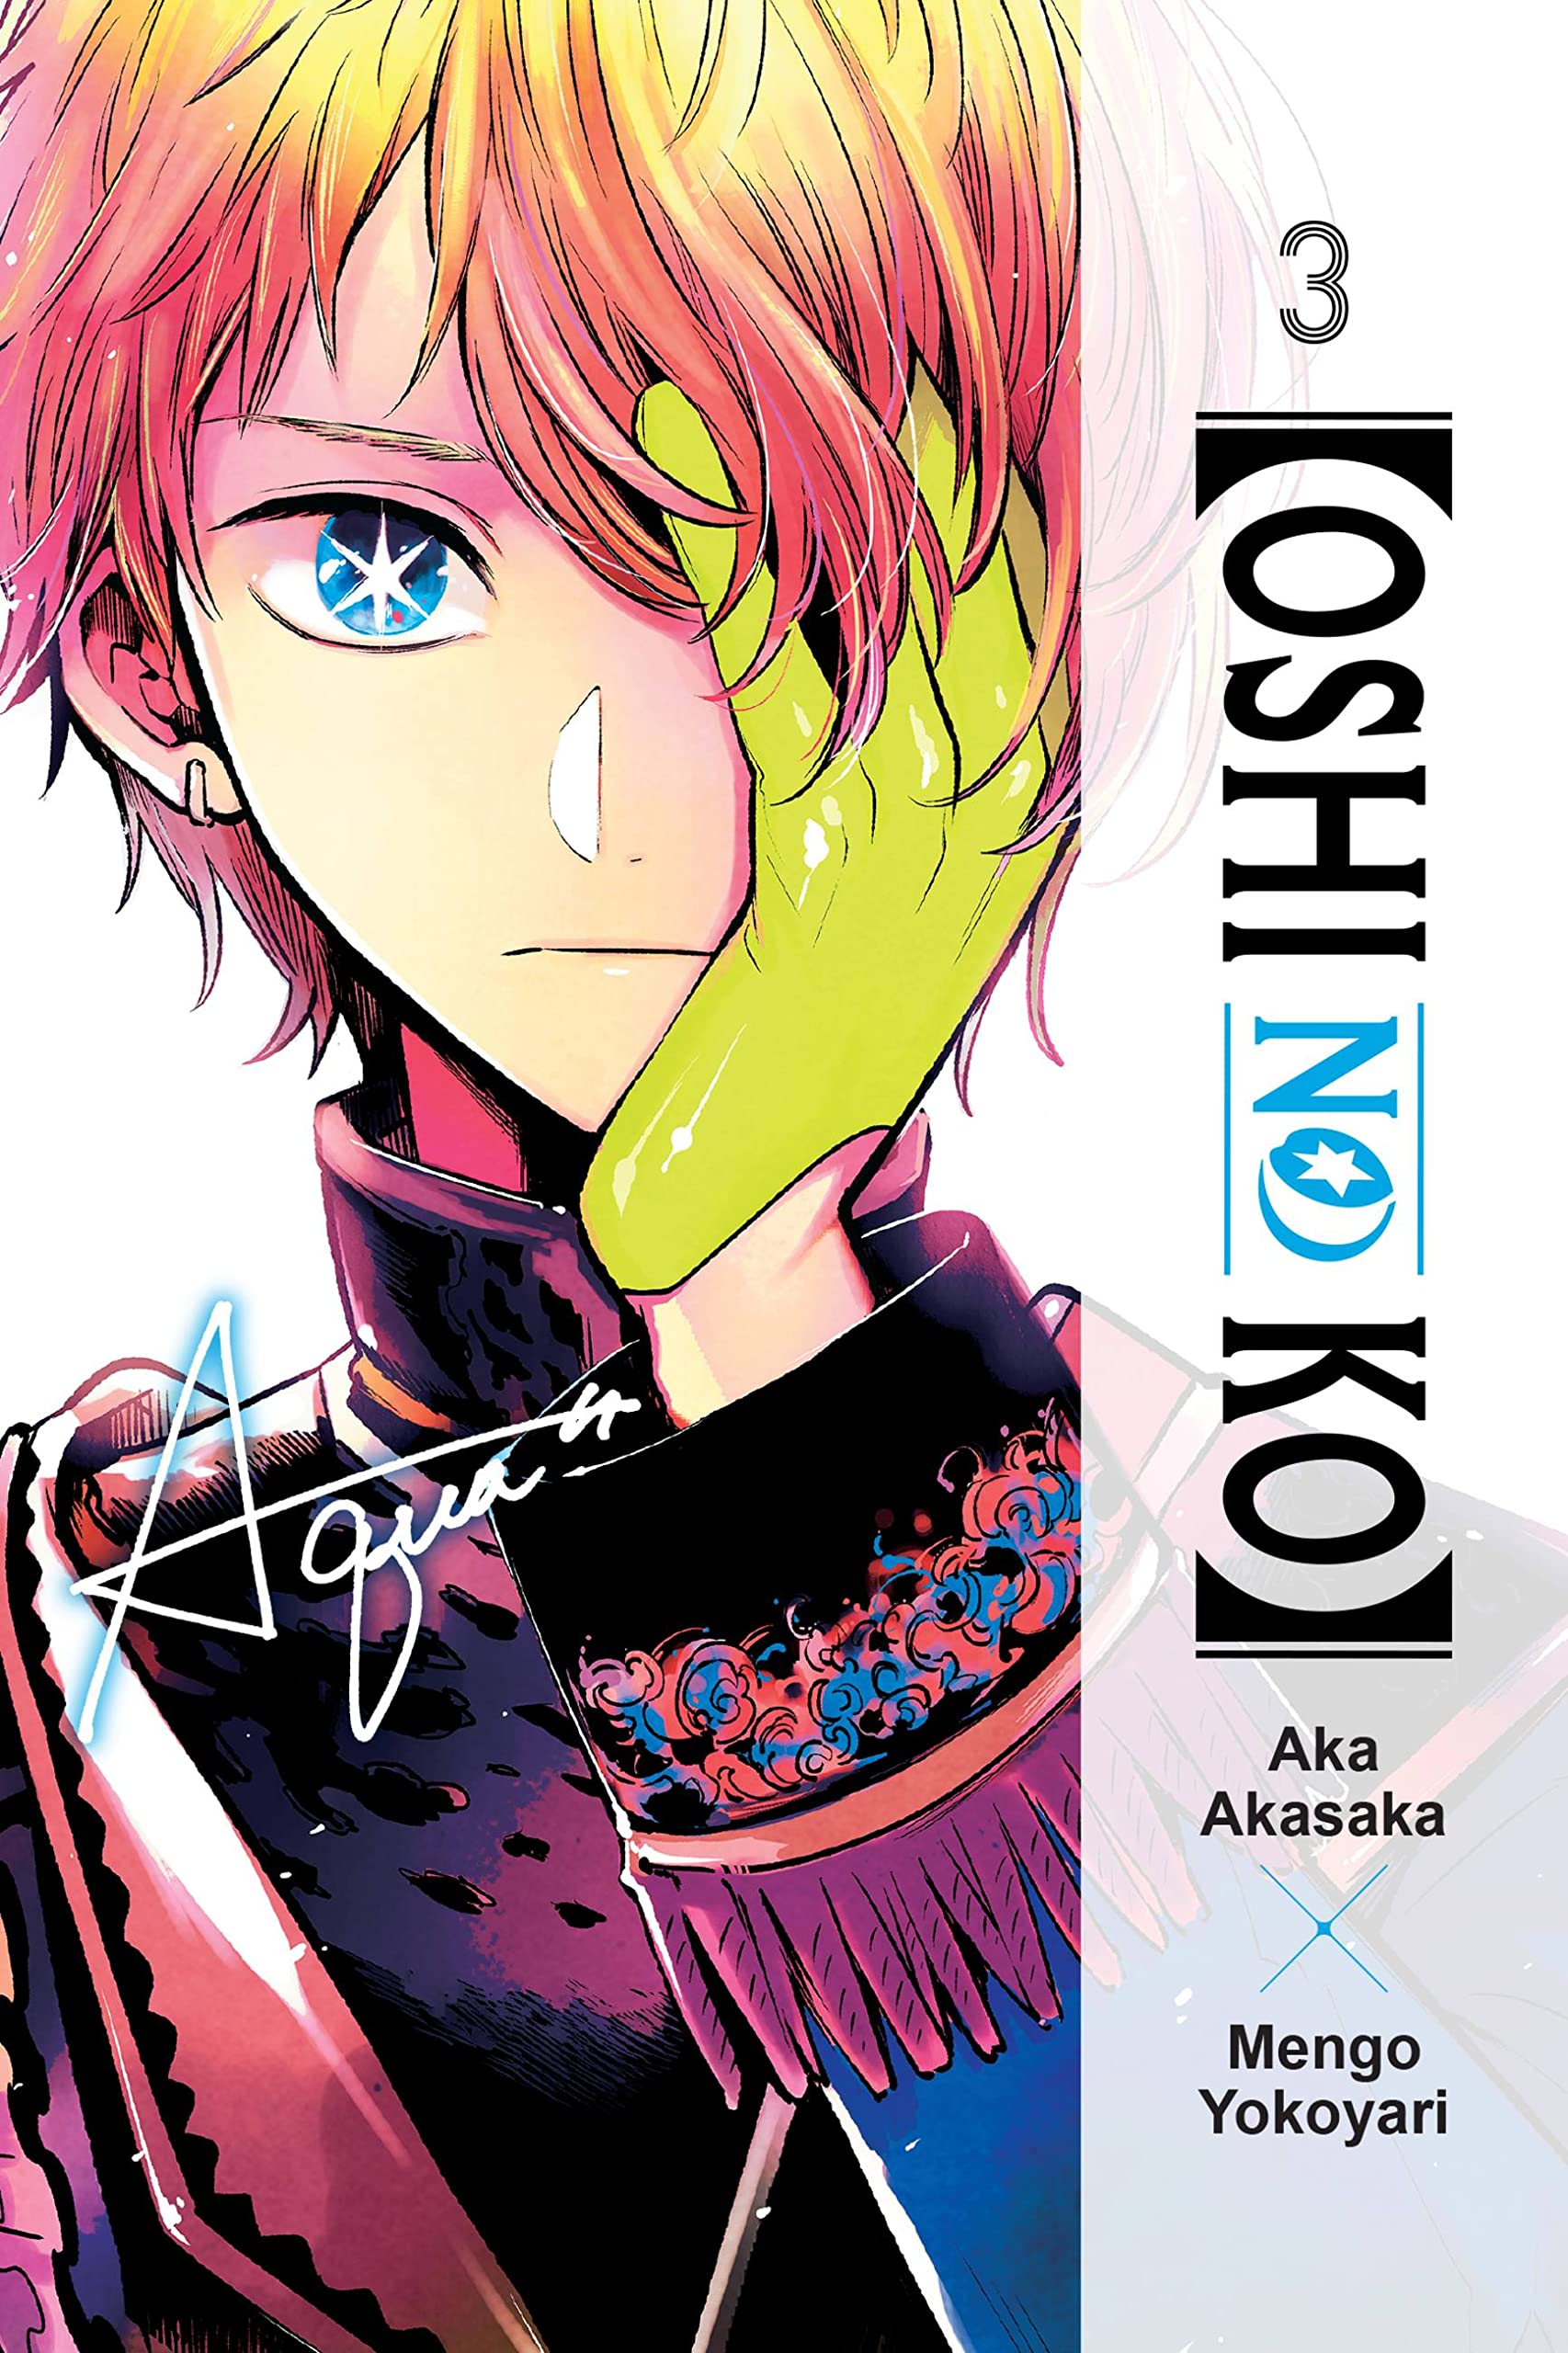 Oshi No Ko - Volume 3 | Aka Akasaka